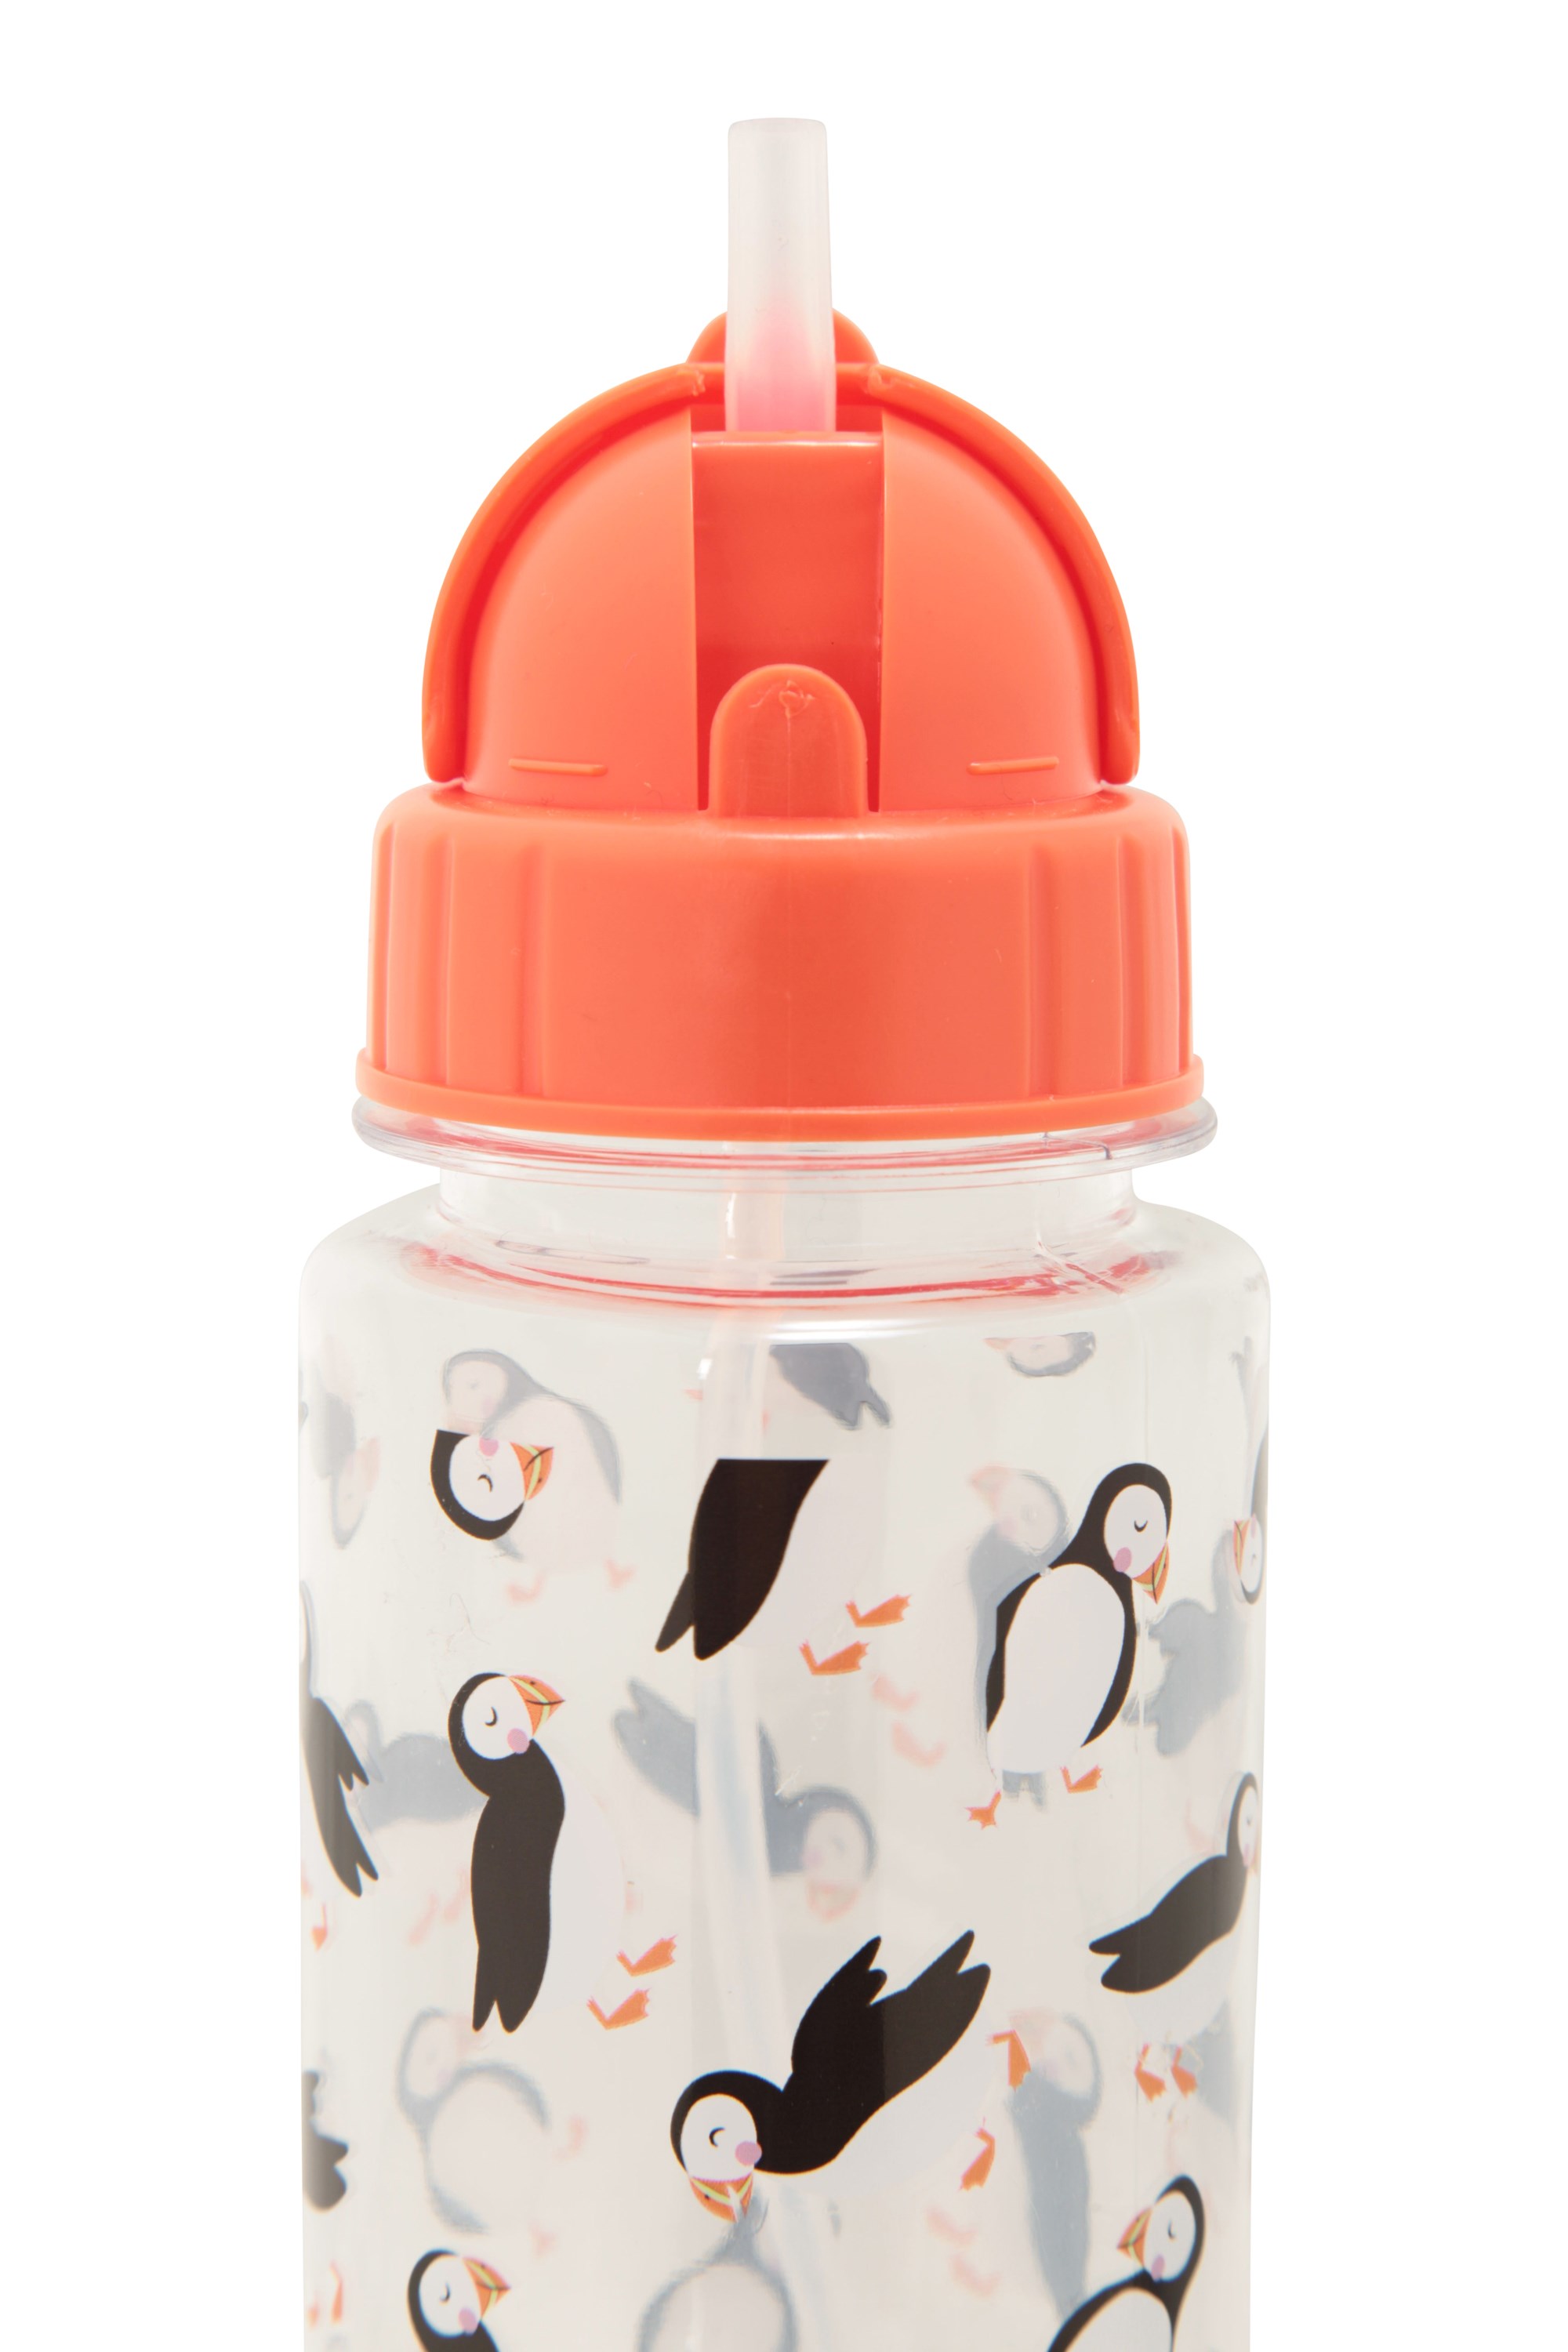 Polar - Insulated Water Bottle Bidon Kids - 350ml / 12oz - BPA